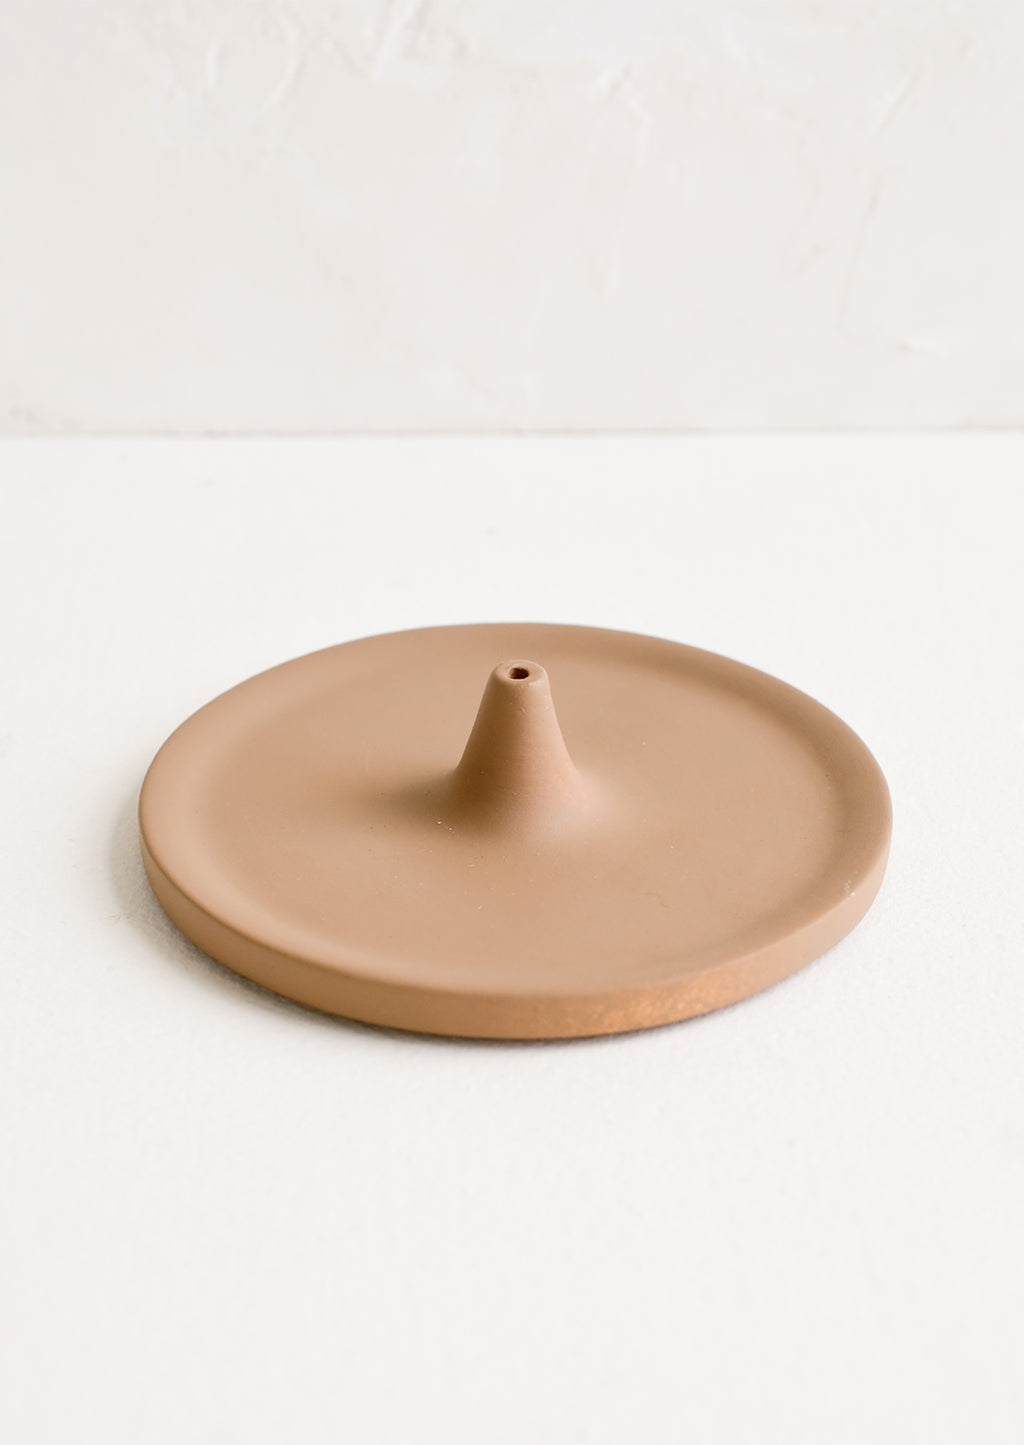 Matte Brown: A round incense holder in matte brown ceramic.